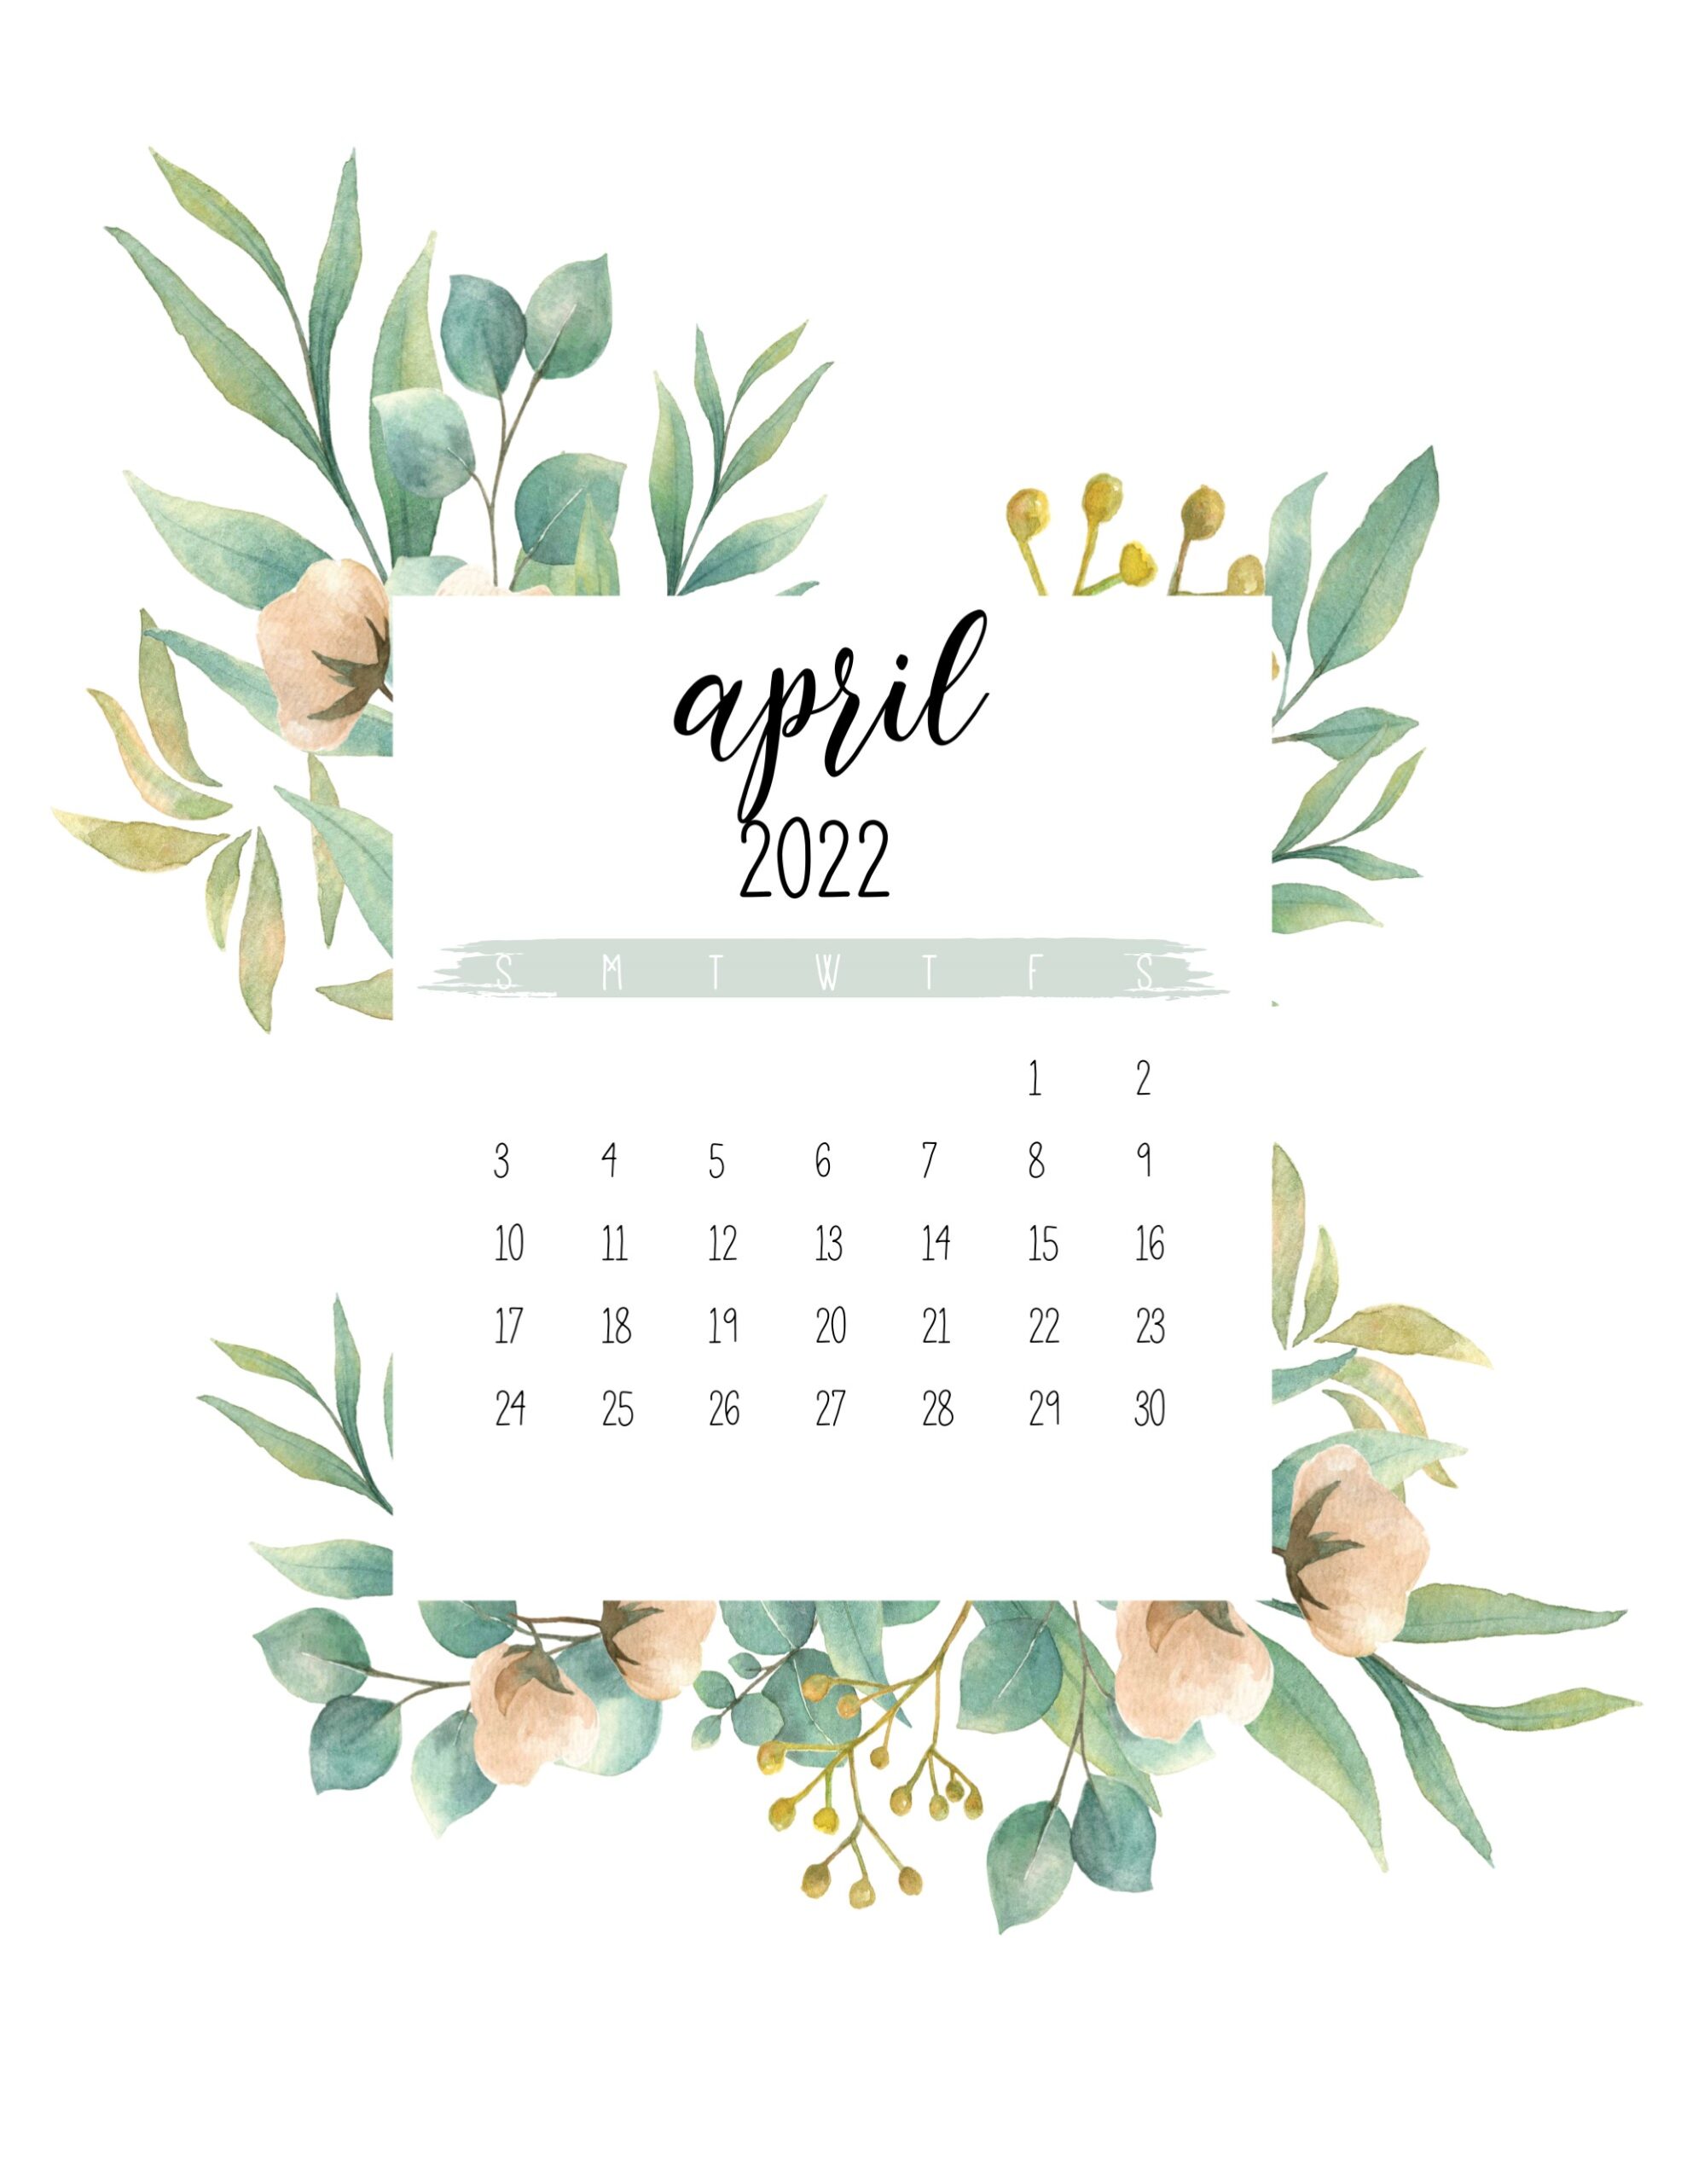 April 2022 Calendar Wallpapers Wallpaper Cave